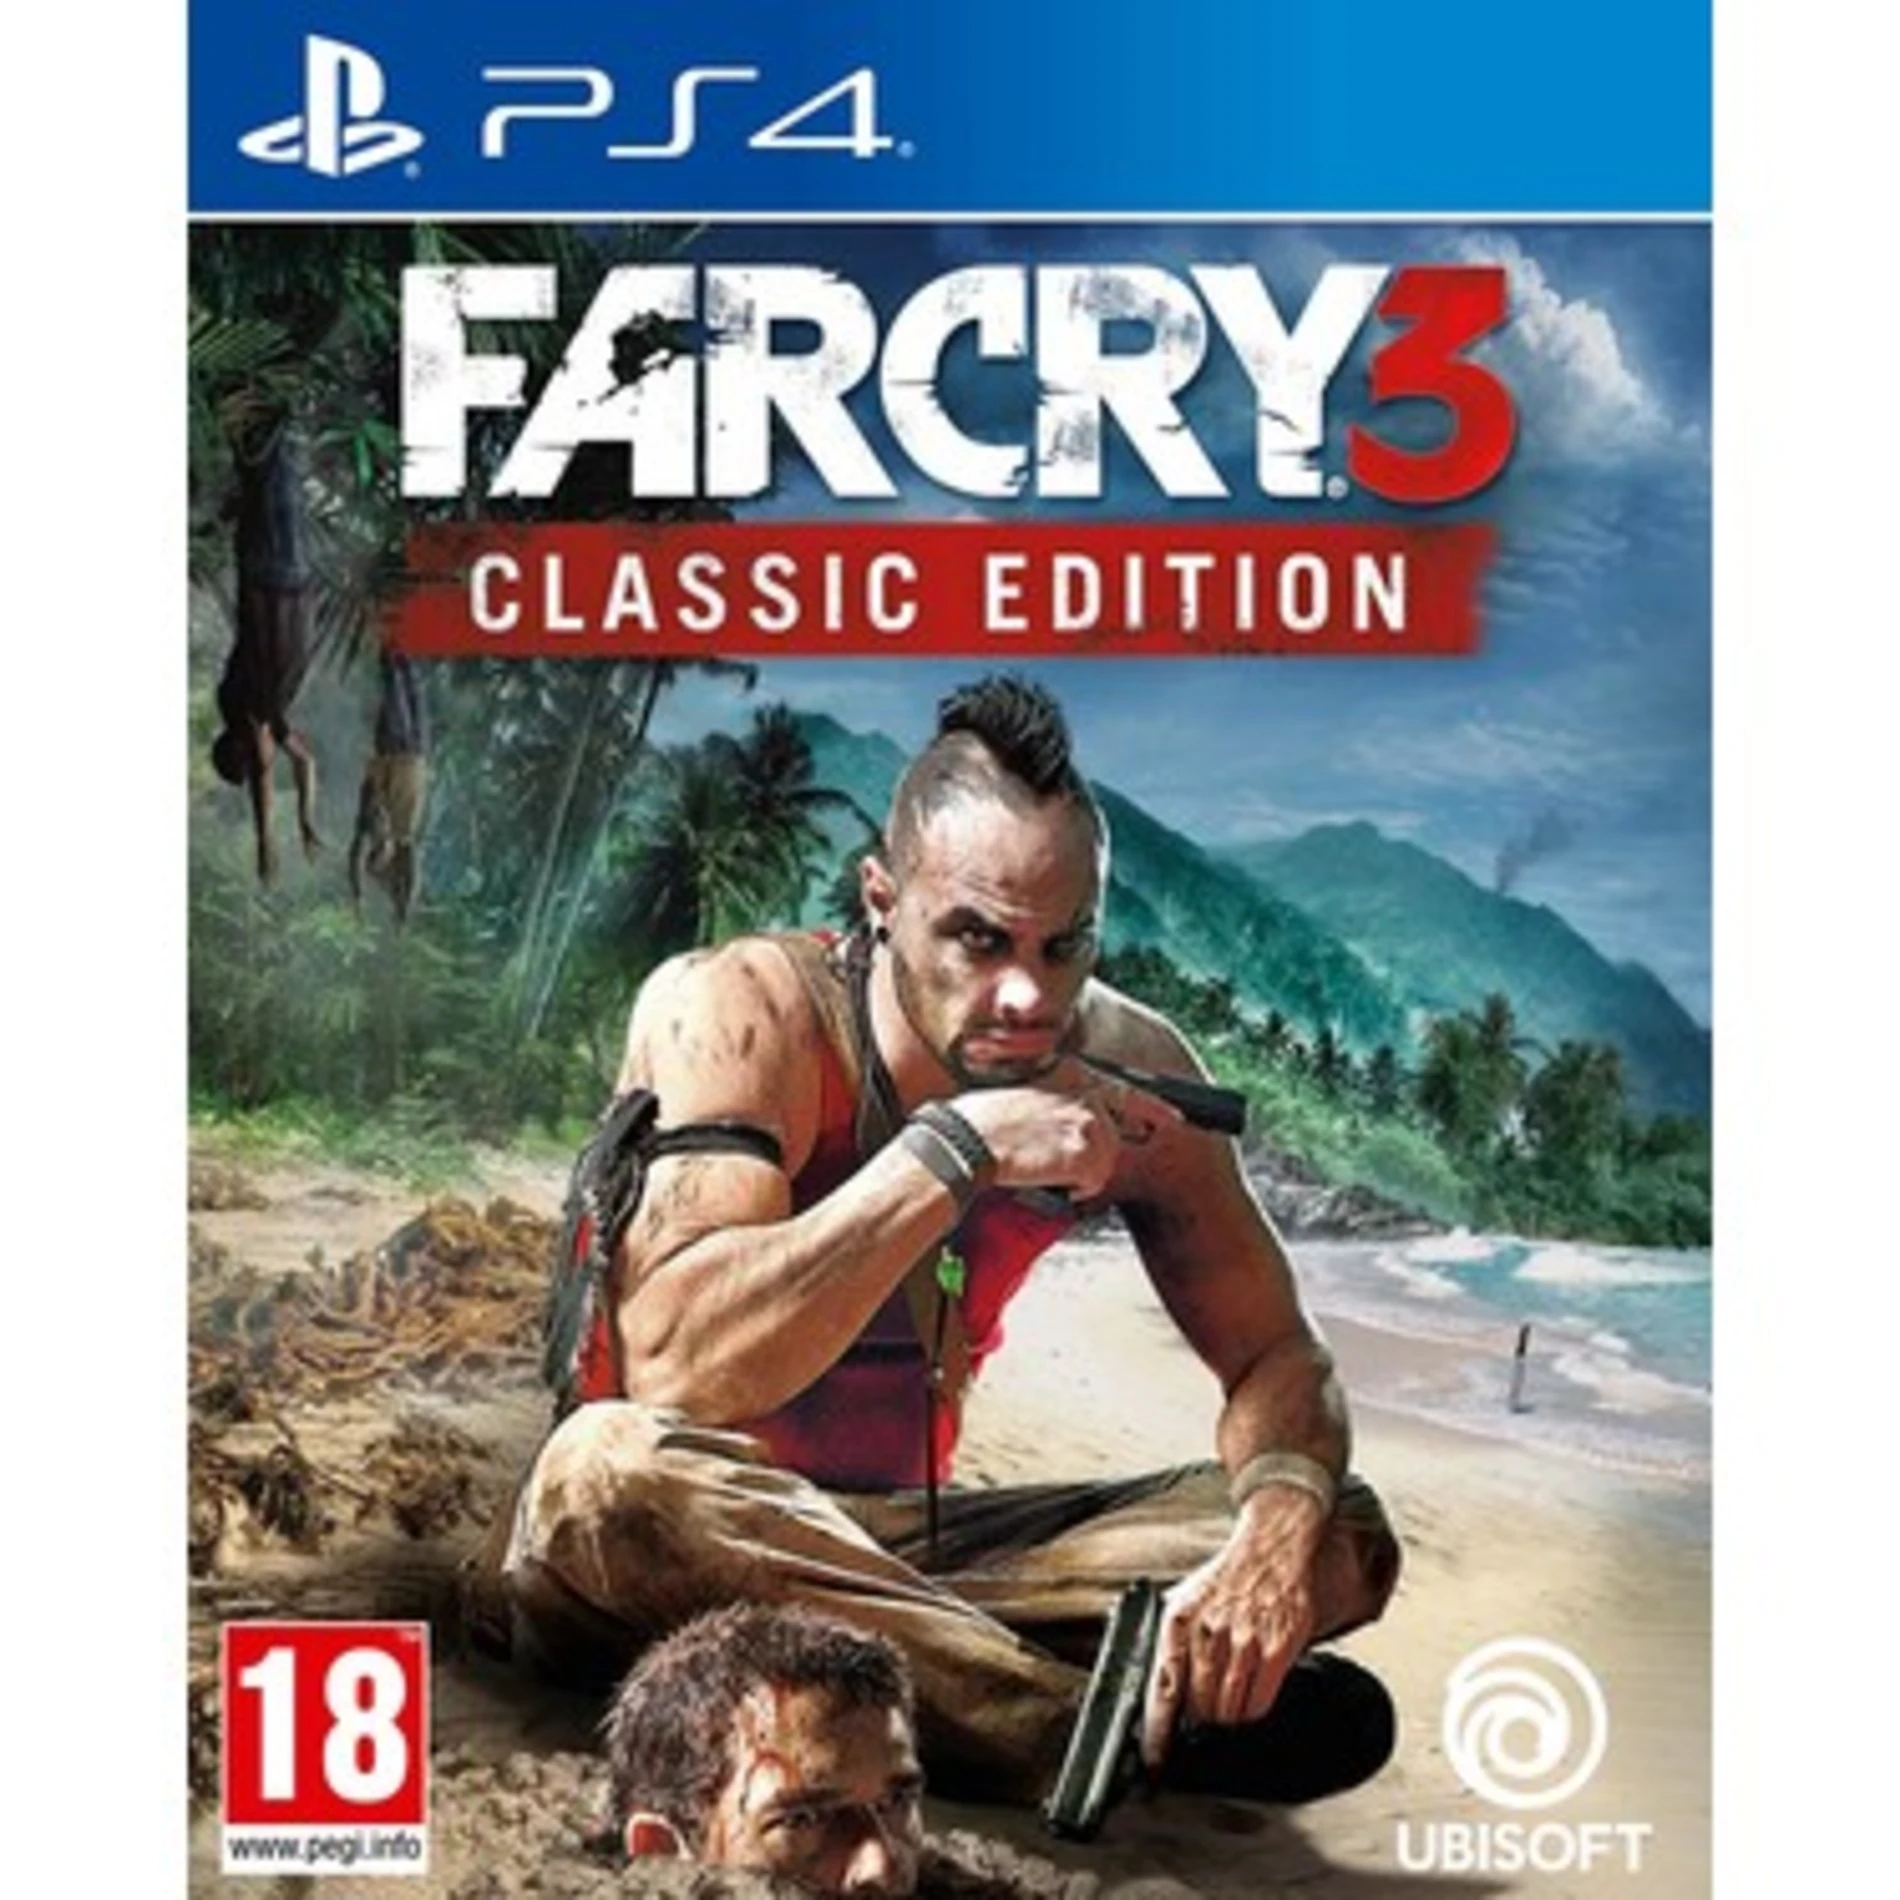 Far Cry 3 Classic Edition - Ps4 Oyun [SIFIR]